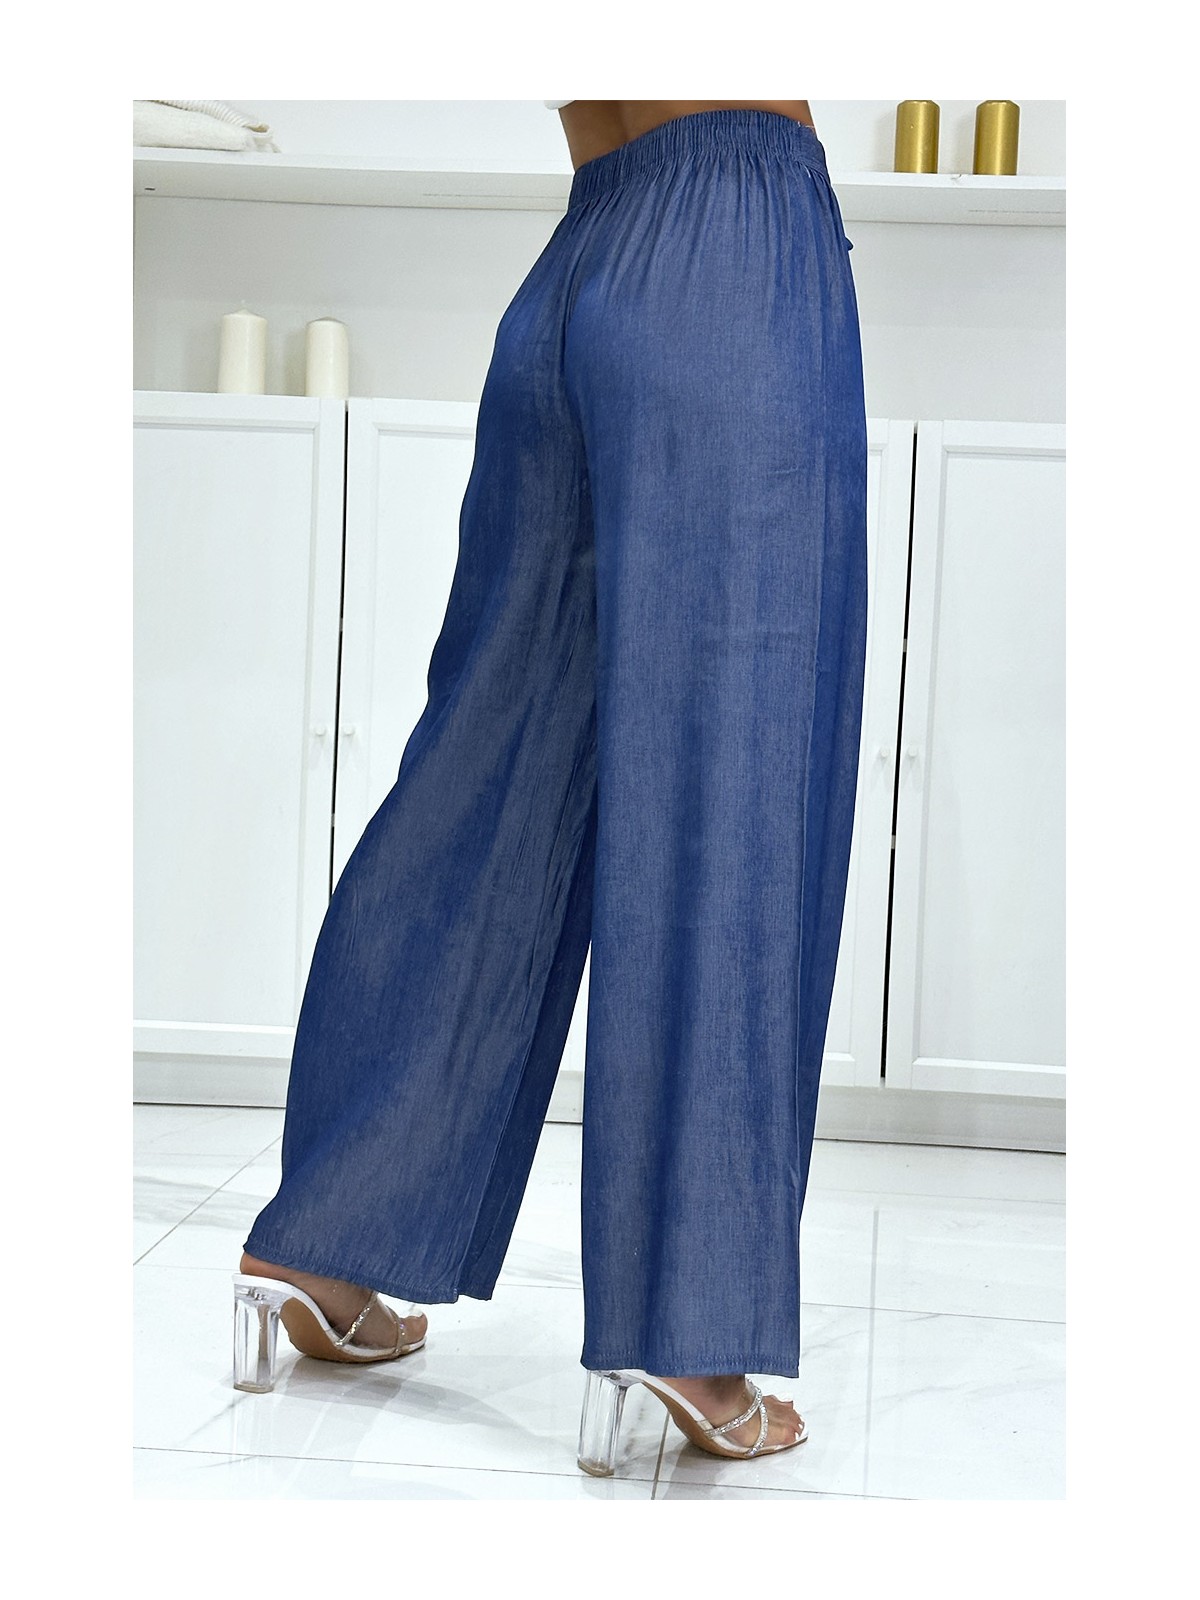 Pantalon palazzo couleur jeans bleu marine - 1